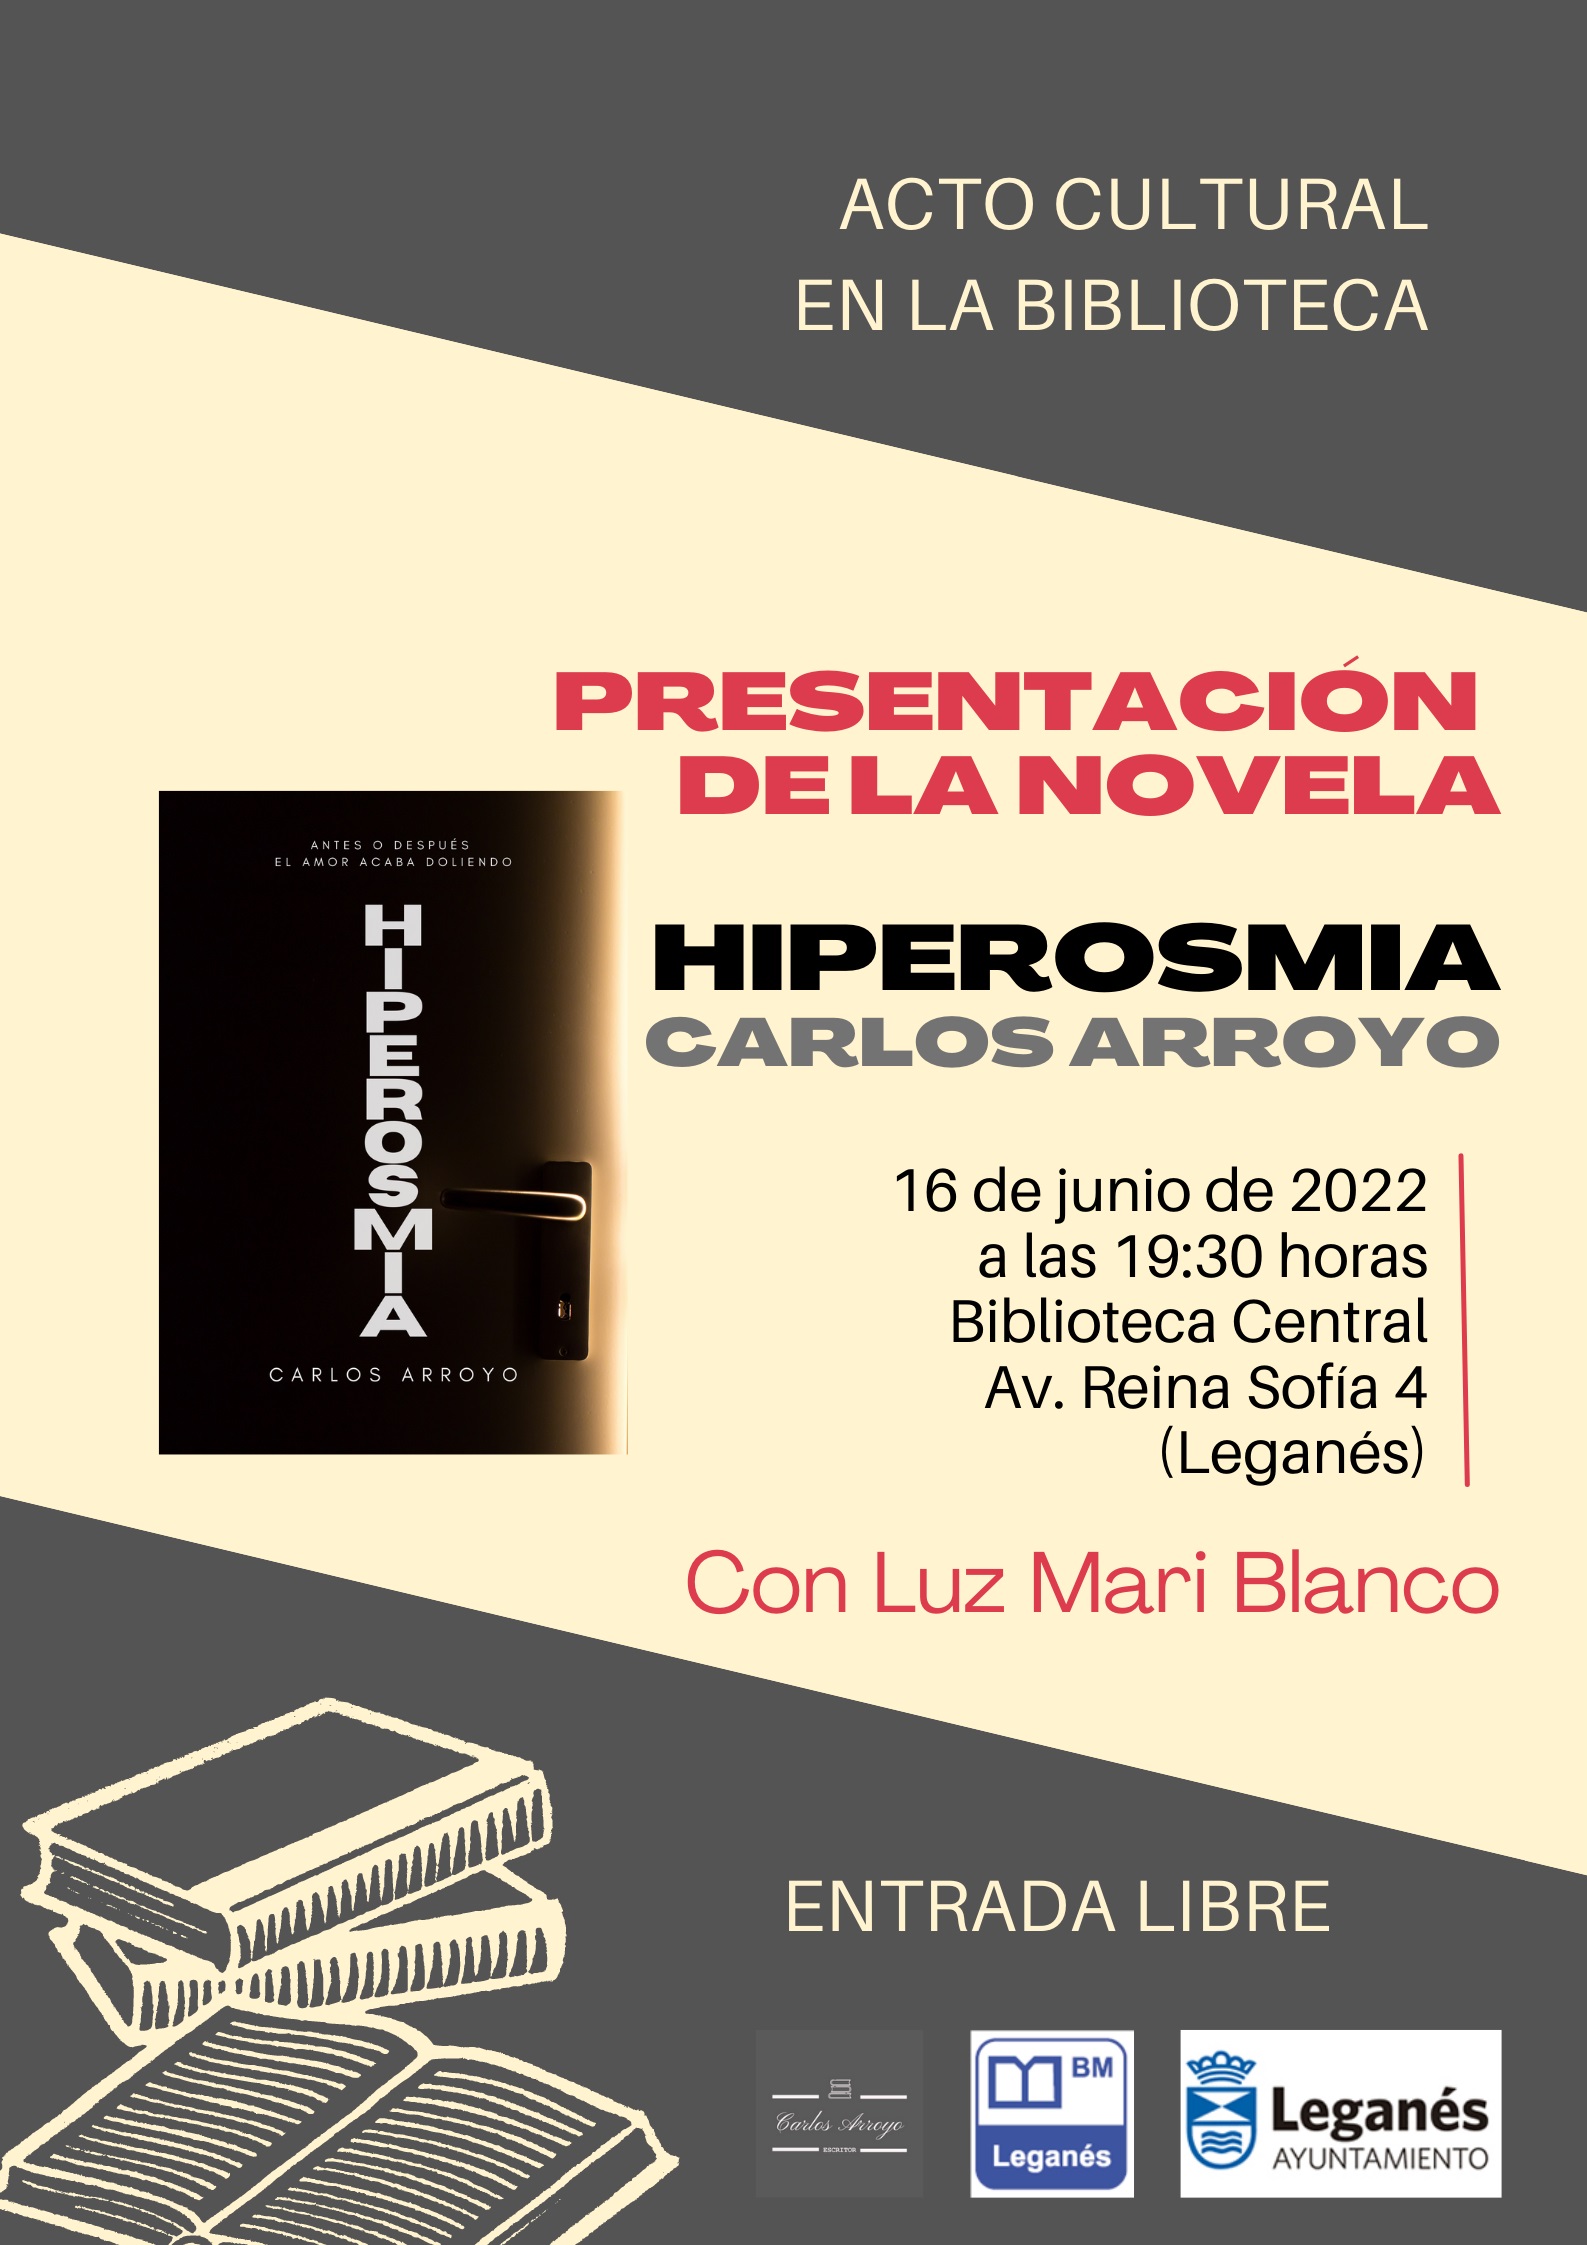 Presentación del libro “Hiperosmia” novela de suspense